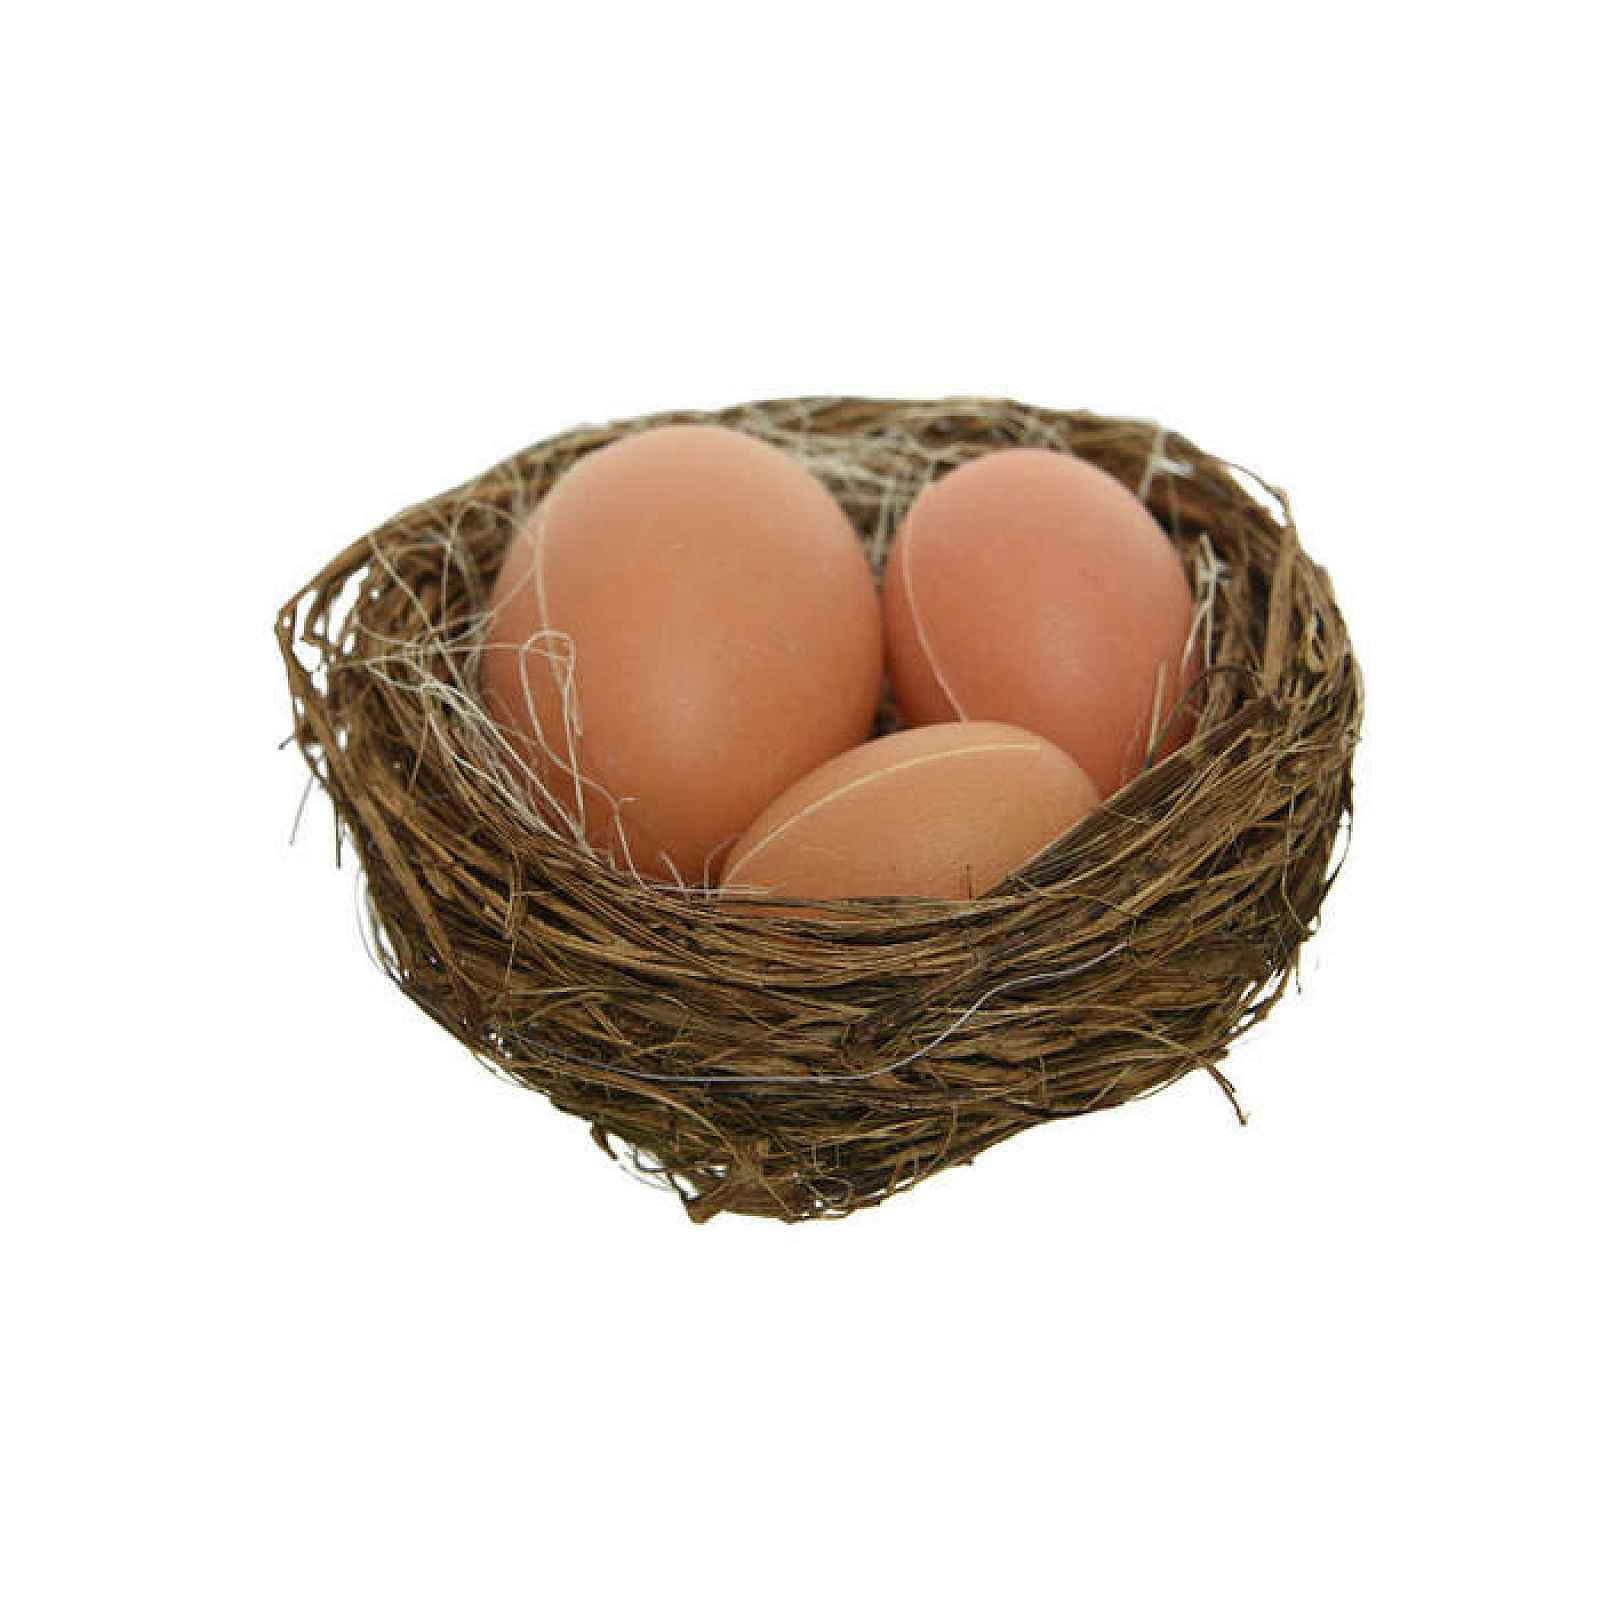 Hnízdo 3 vejce hnědé